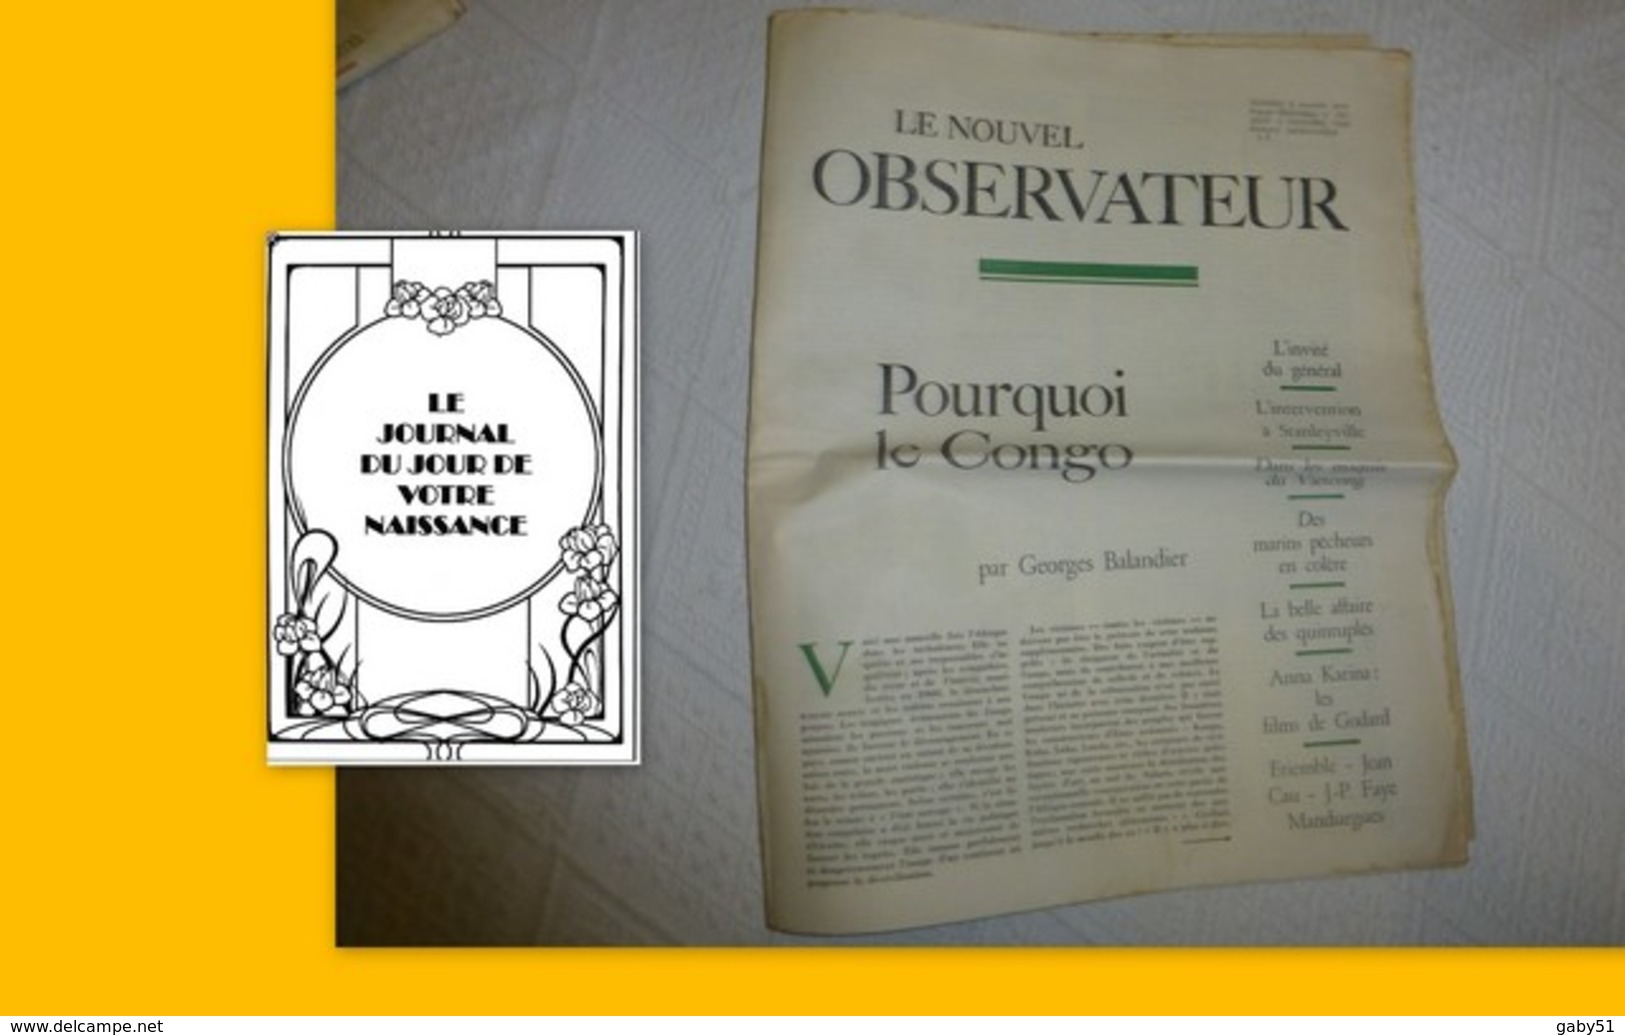 Le Nouvel Observateur N°3, 3 Décembre 1964, Pourquoi Le Congo ? ; JL01 - 1950 - Heute